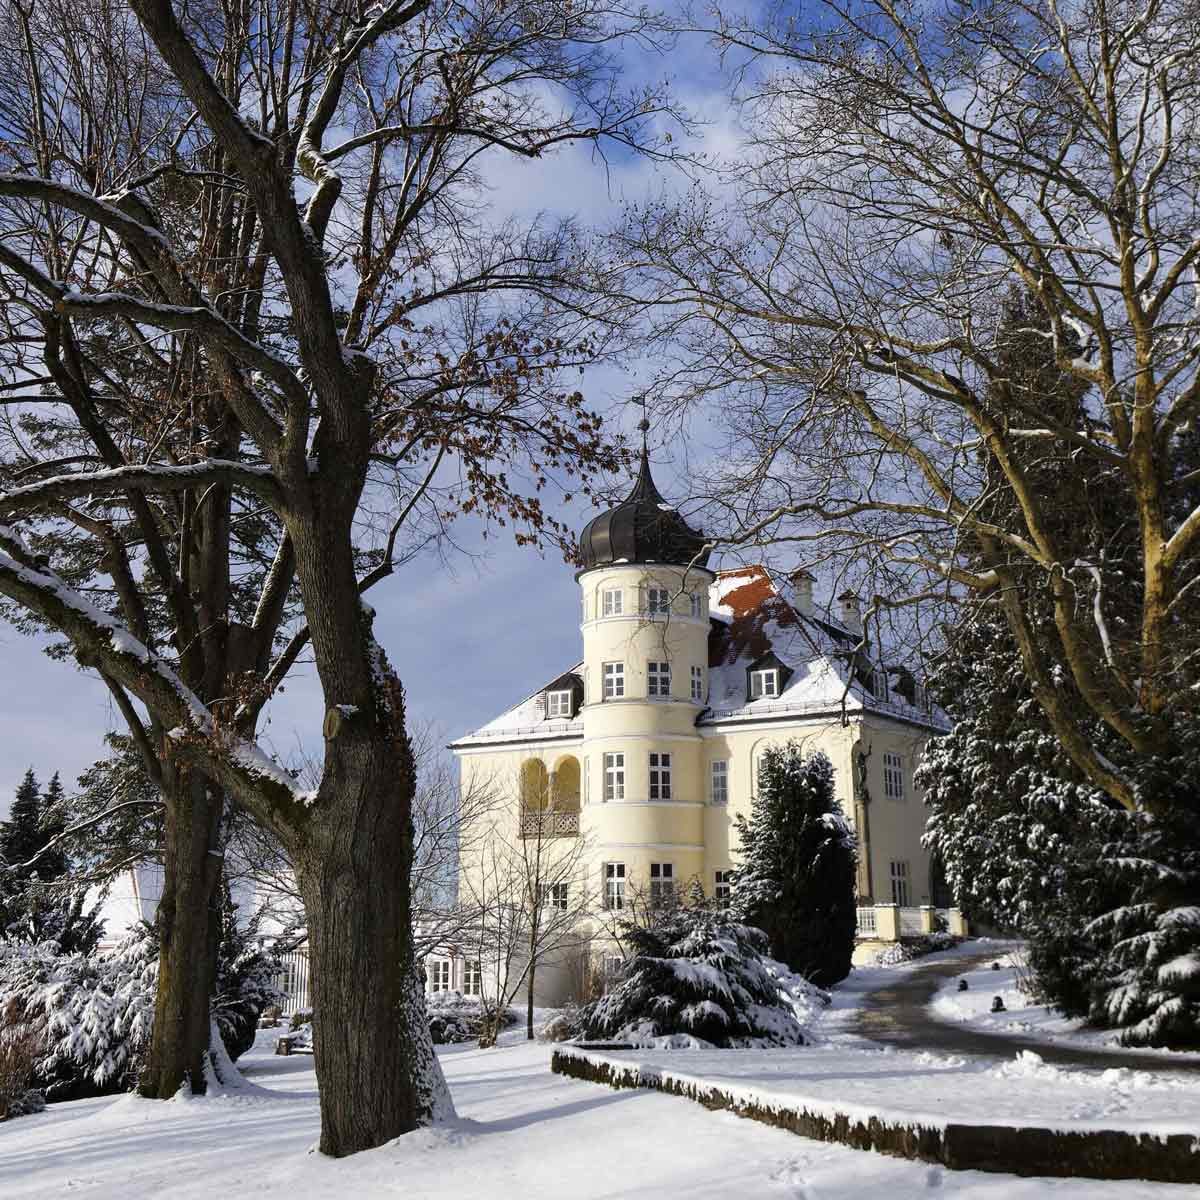 Seidlvilla-Upper-Bavaria-Germany